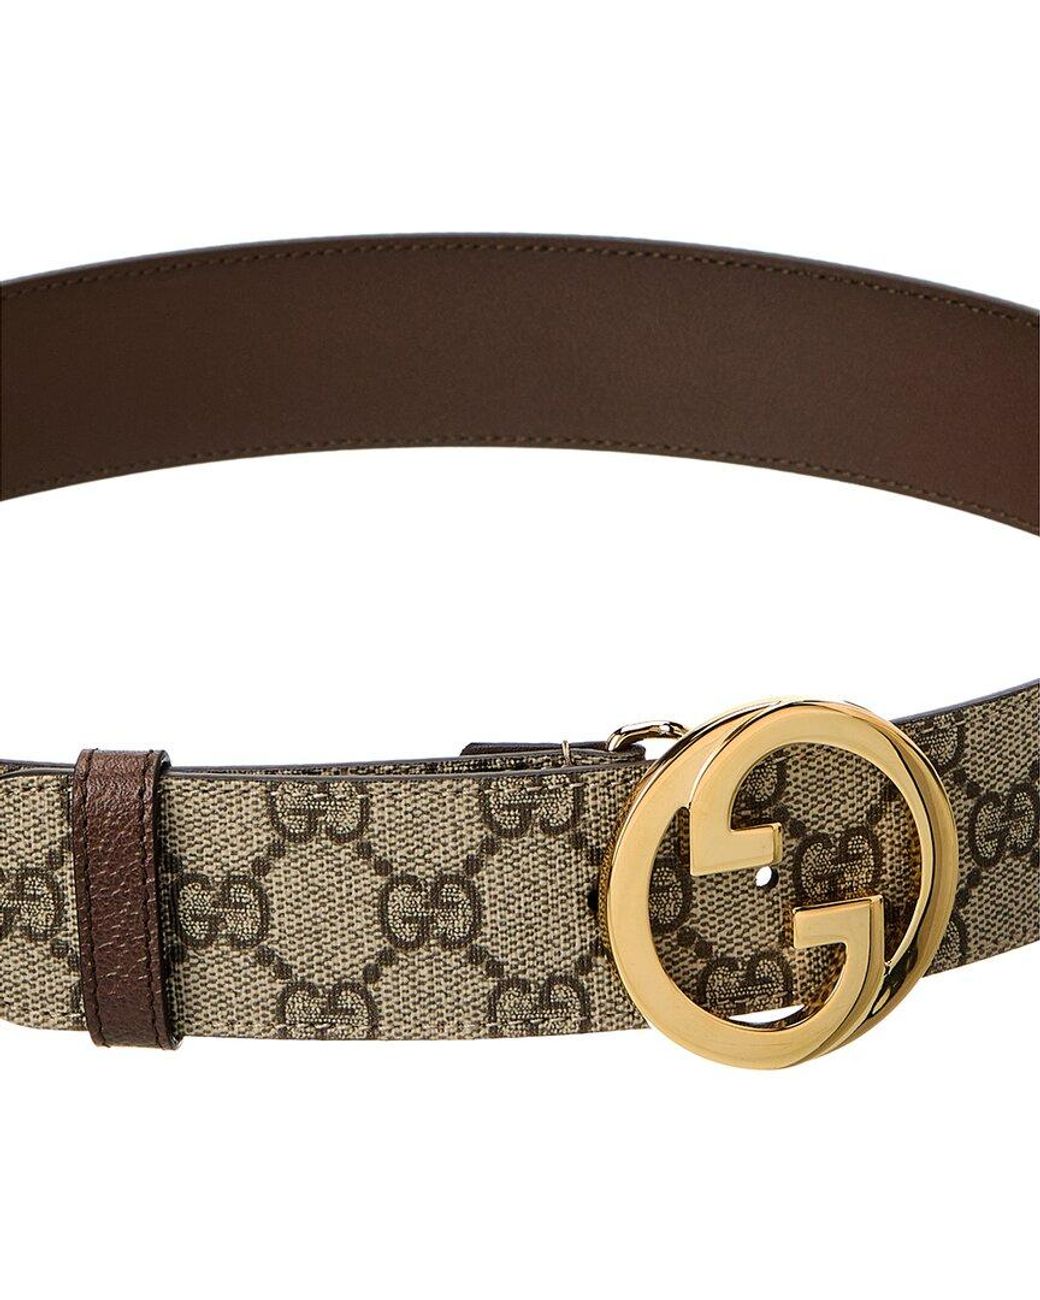 Gucci Women's Blondie Leather Belt